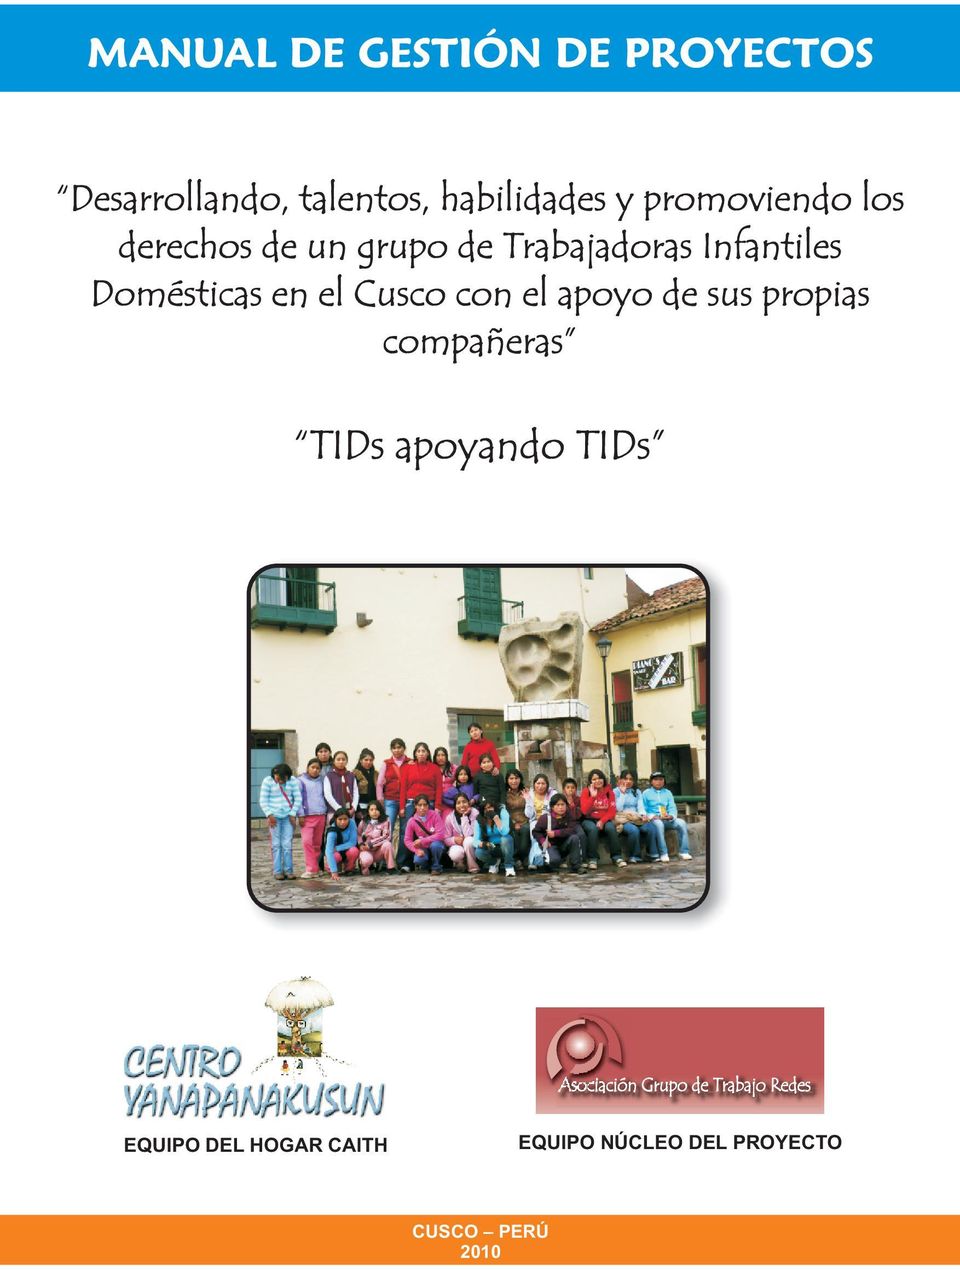 el Cusco con el apoyo de sus propias compañeras TIDs apoyando TIDs Asociación